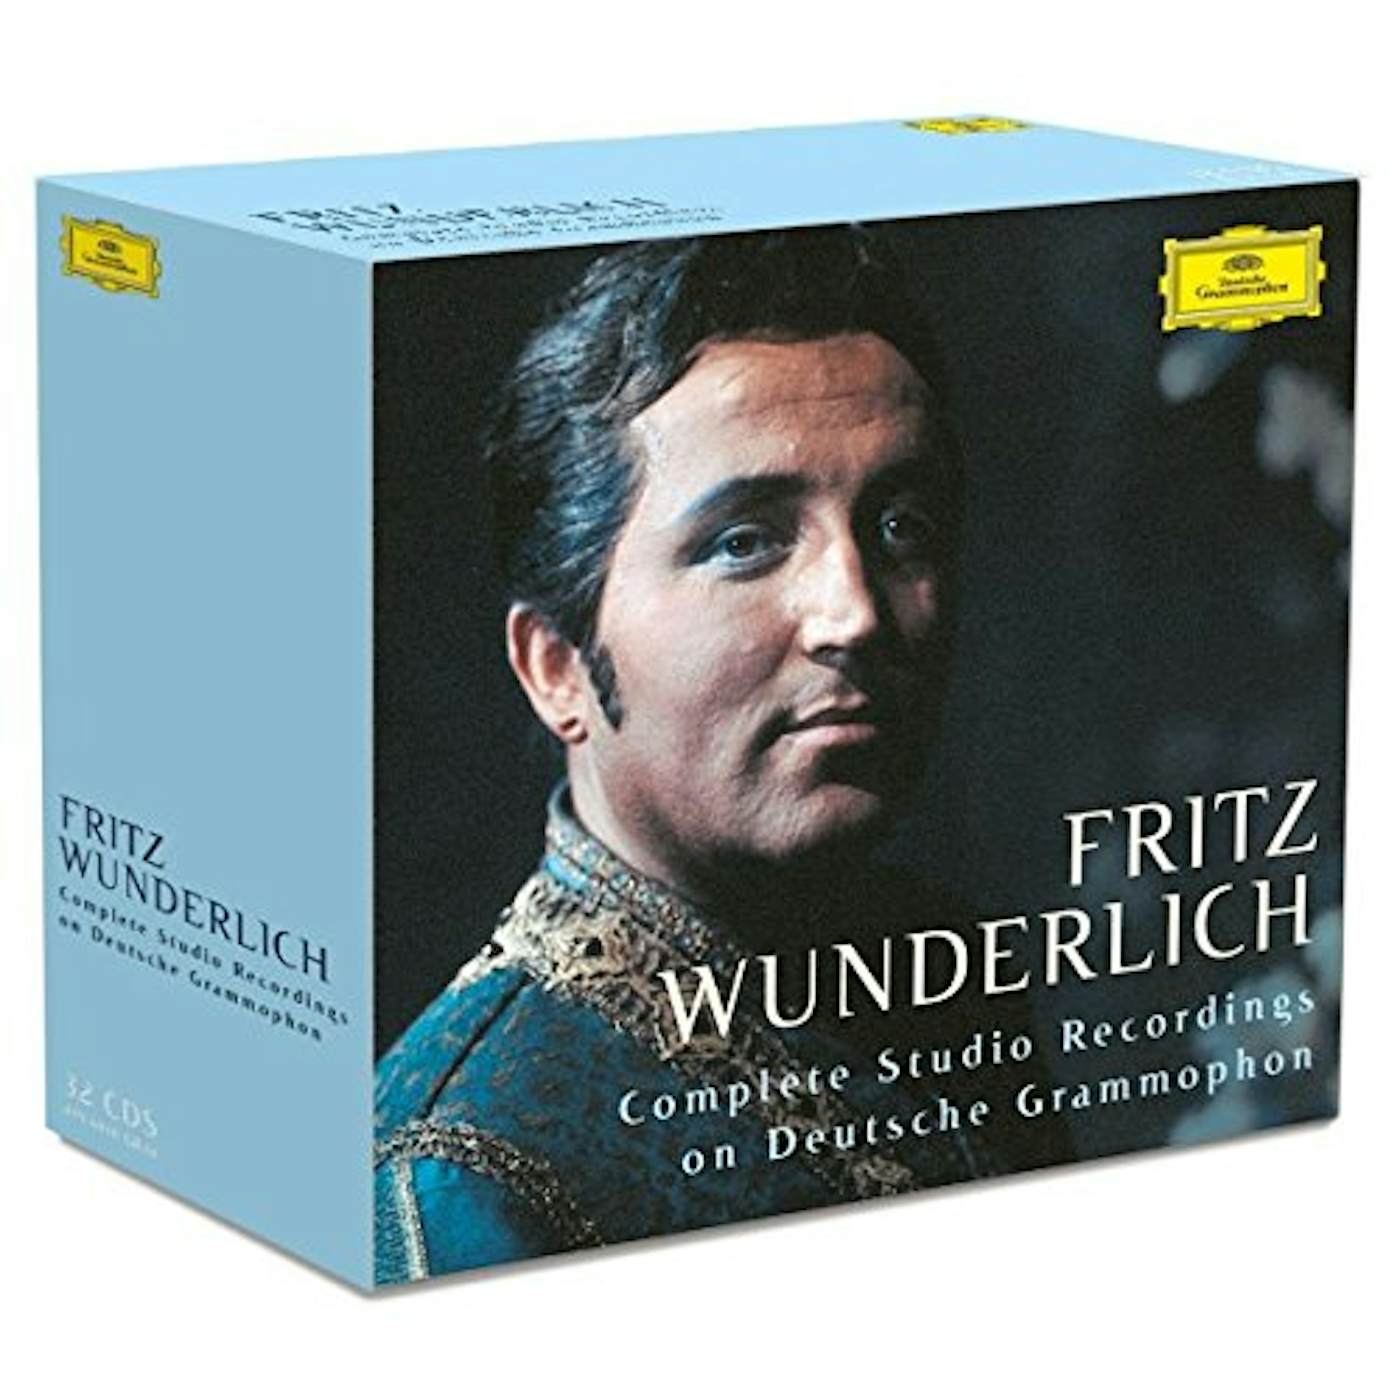 Fritz Wunderlich WUNDERLICH - COMPLETE STUDIO RECORDINGS ON DEUTSCH CD